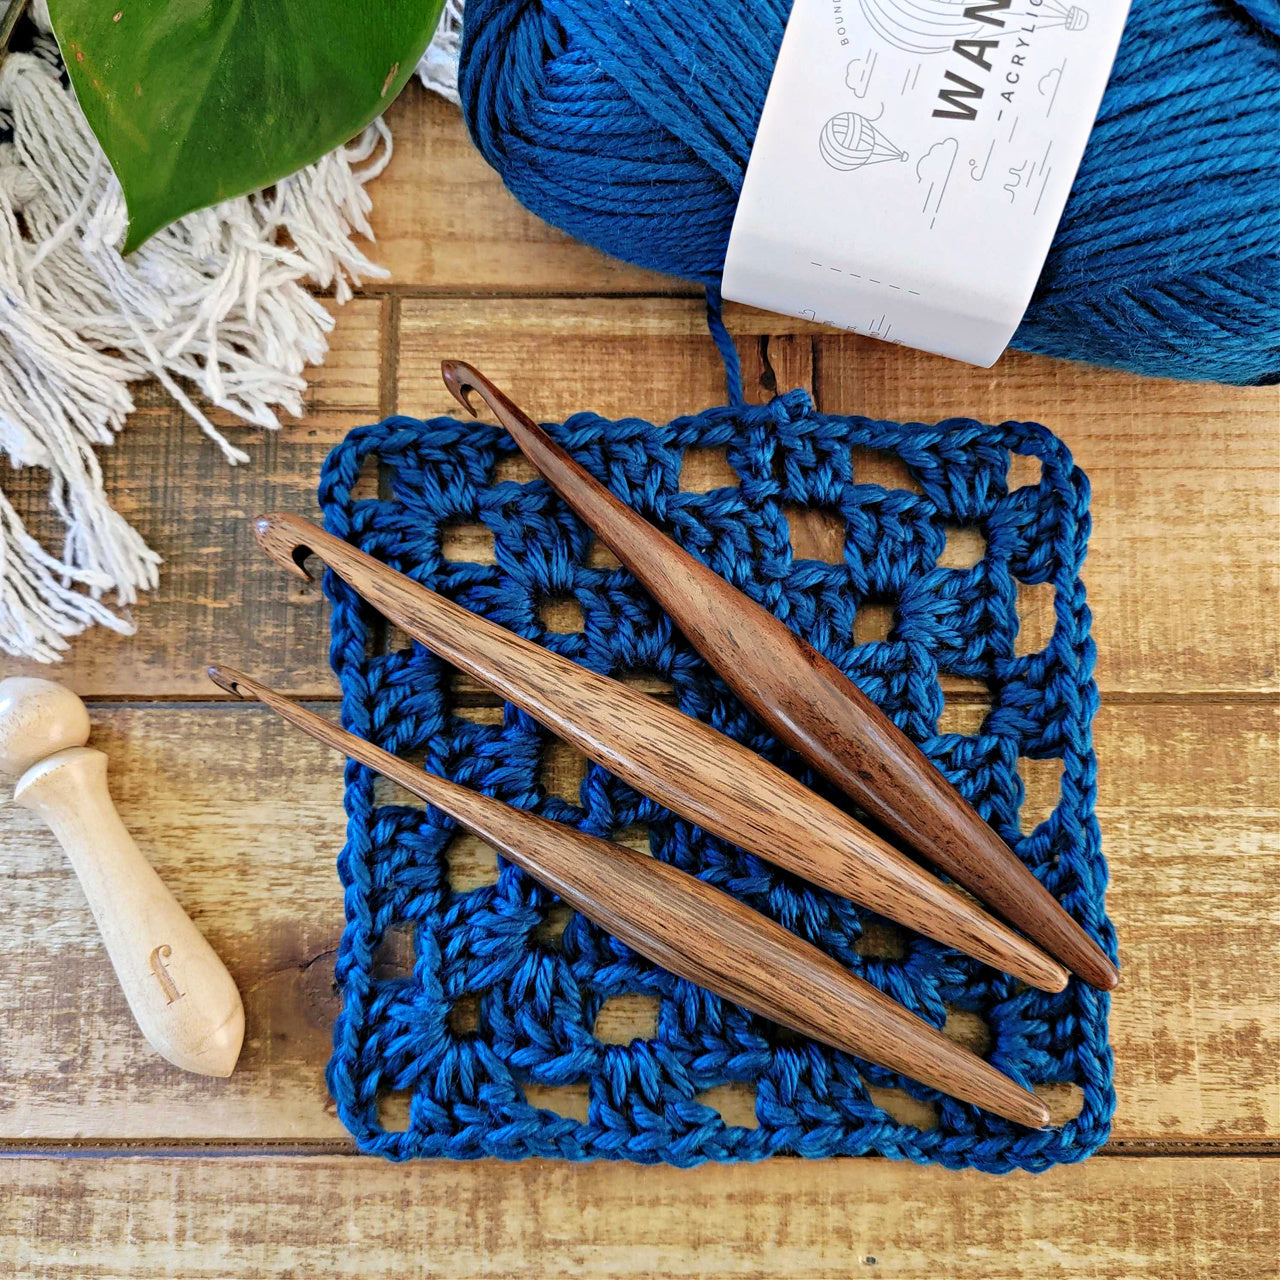 Getaway Bamboo Crochet Hook Set: Laurel Hill Exotic Wood Fiber